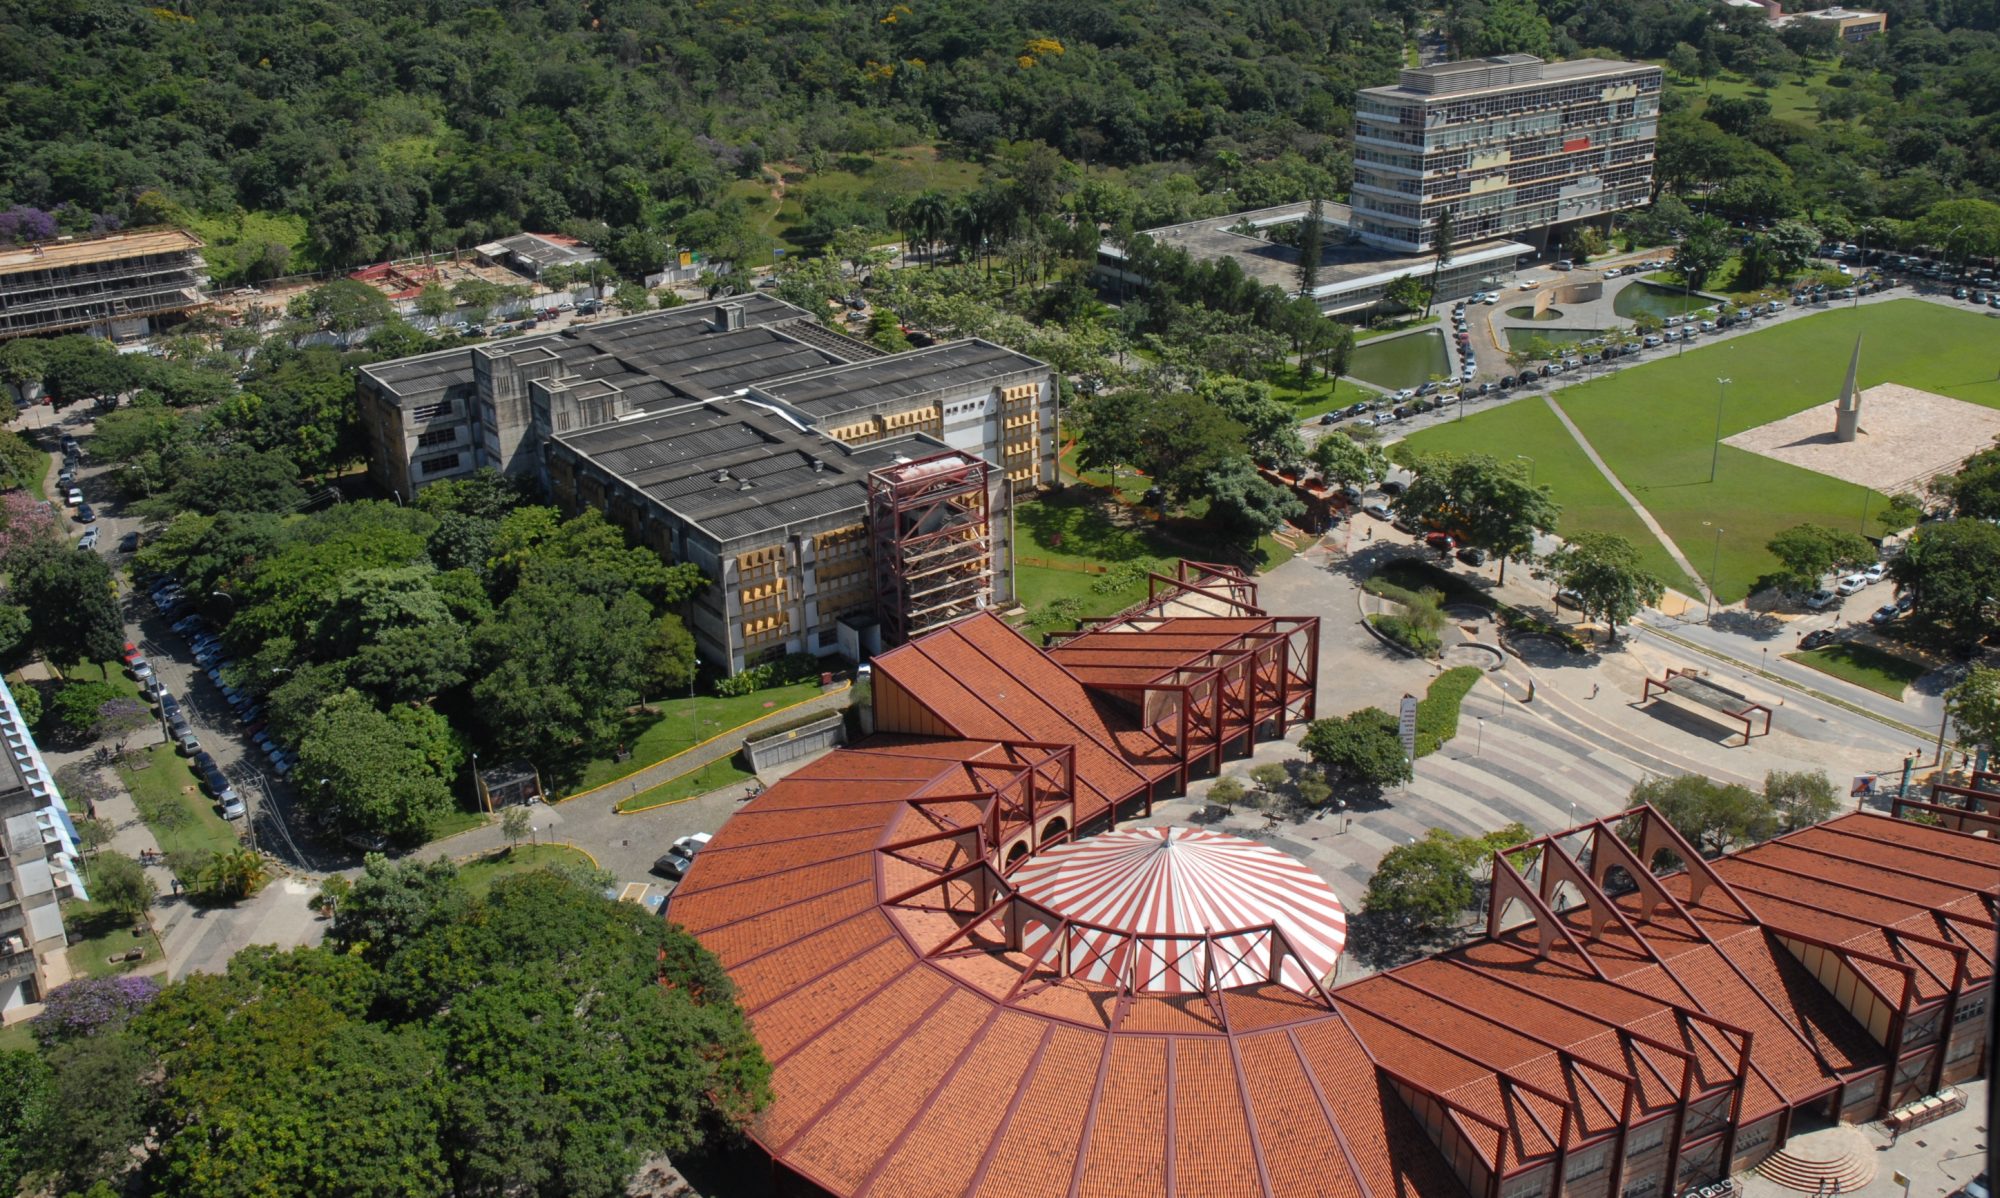 XI Brazilian Meeting on Simulational Physics